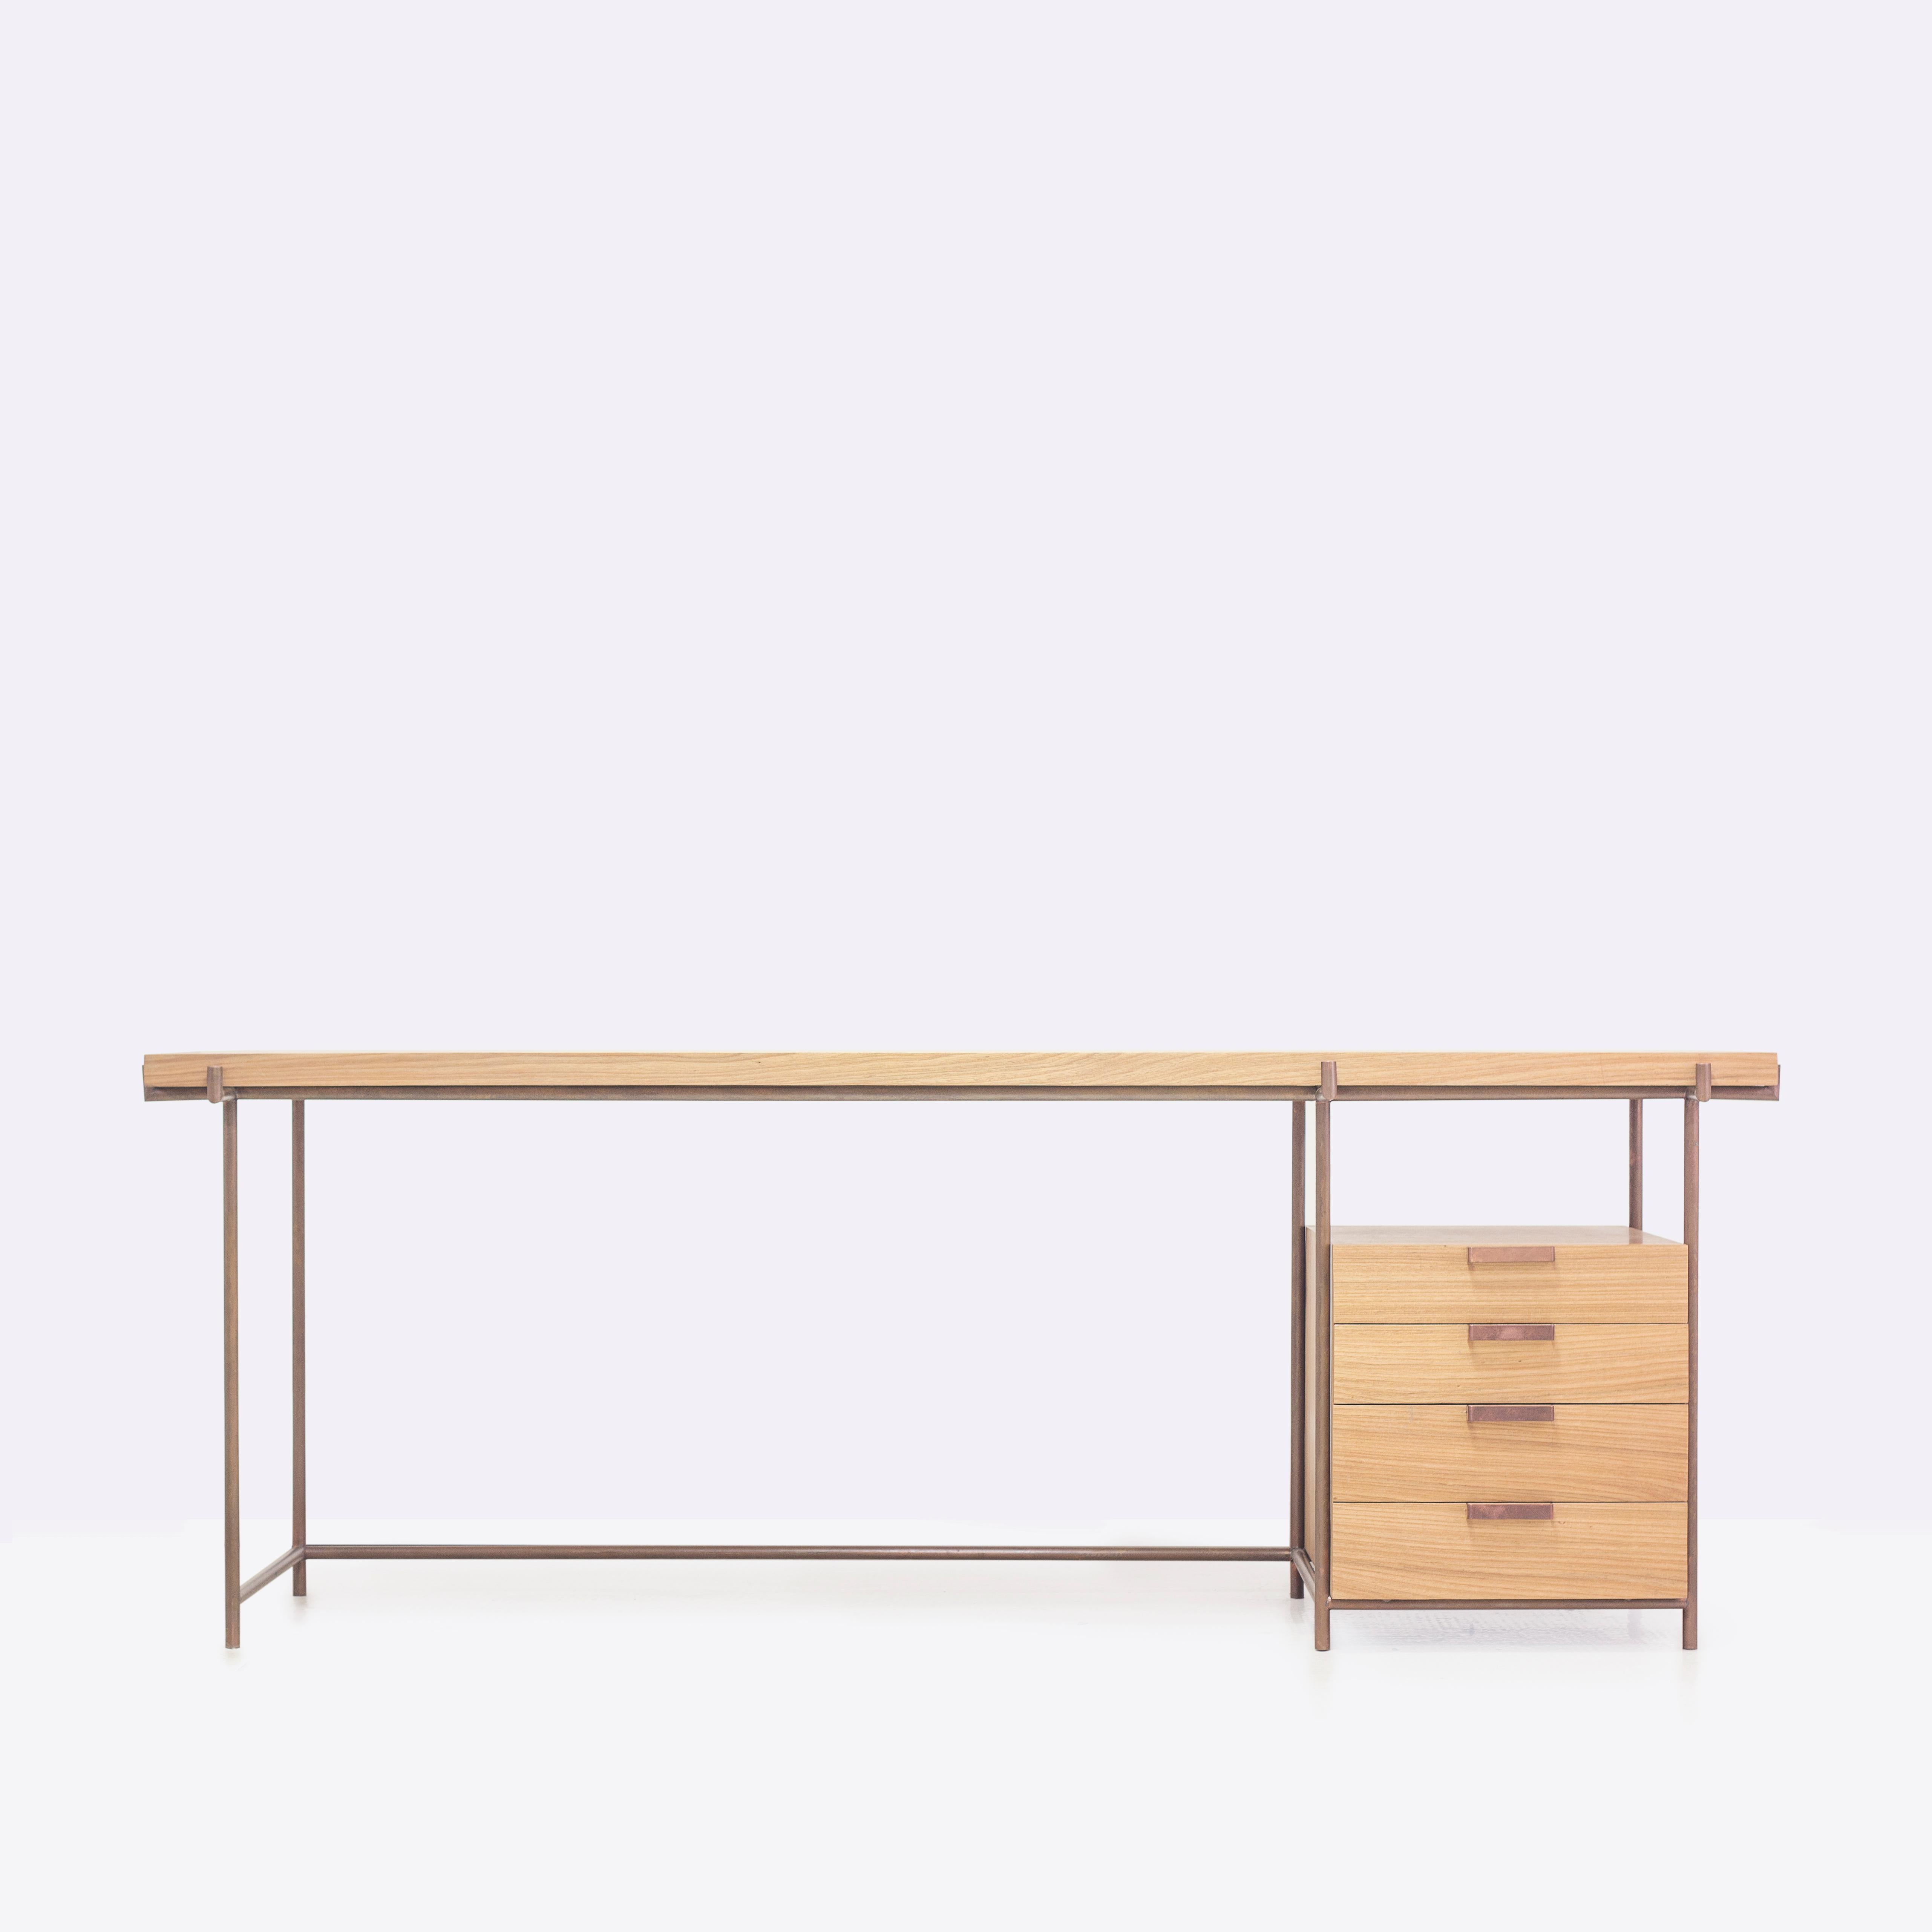 Der Marajoara-Schreibtisch mit Schublade ist eine Studie über moderne Gebrauchsmöbel aus der Mitte des Jahrhunderts mit brasilianischer Native Arte-Referenz.
Der moderne Designstil ist eine der einflussreichsten Bewegungen im zeitgenössischen